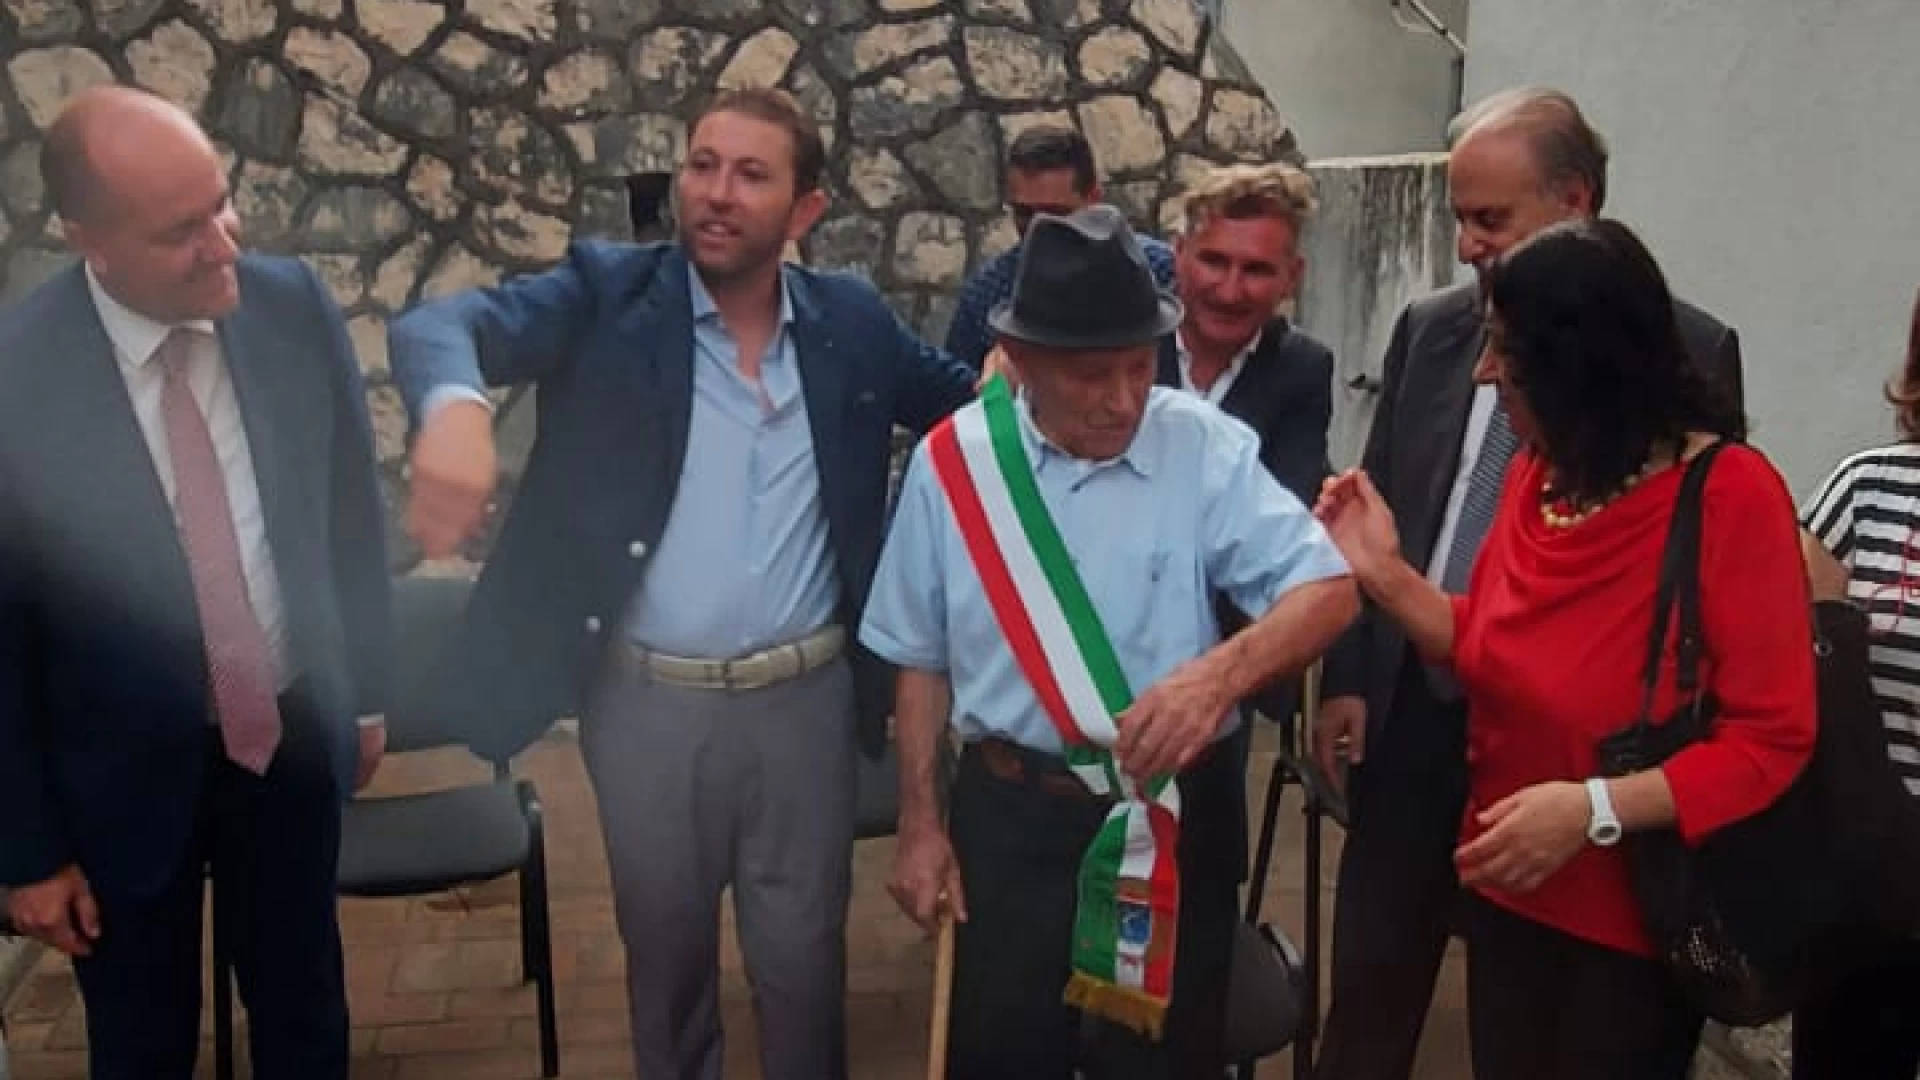 Nonno Michele compie 100 anni, Sesto Campano festeggia. L’Amministrazione lo celebra con una targa riproducente il suo certificato di nascita.